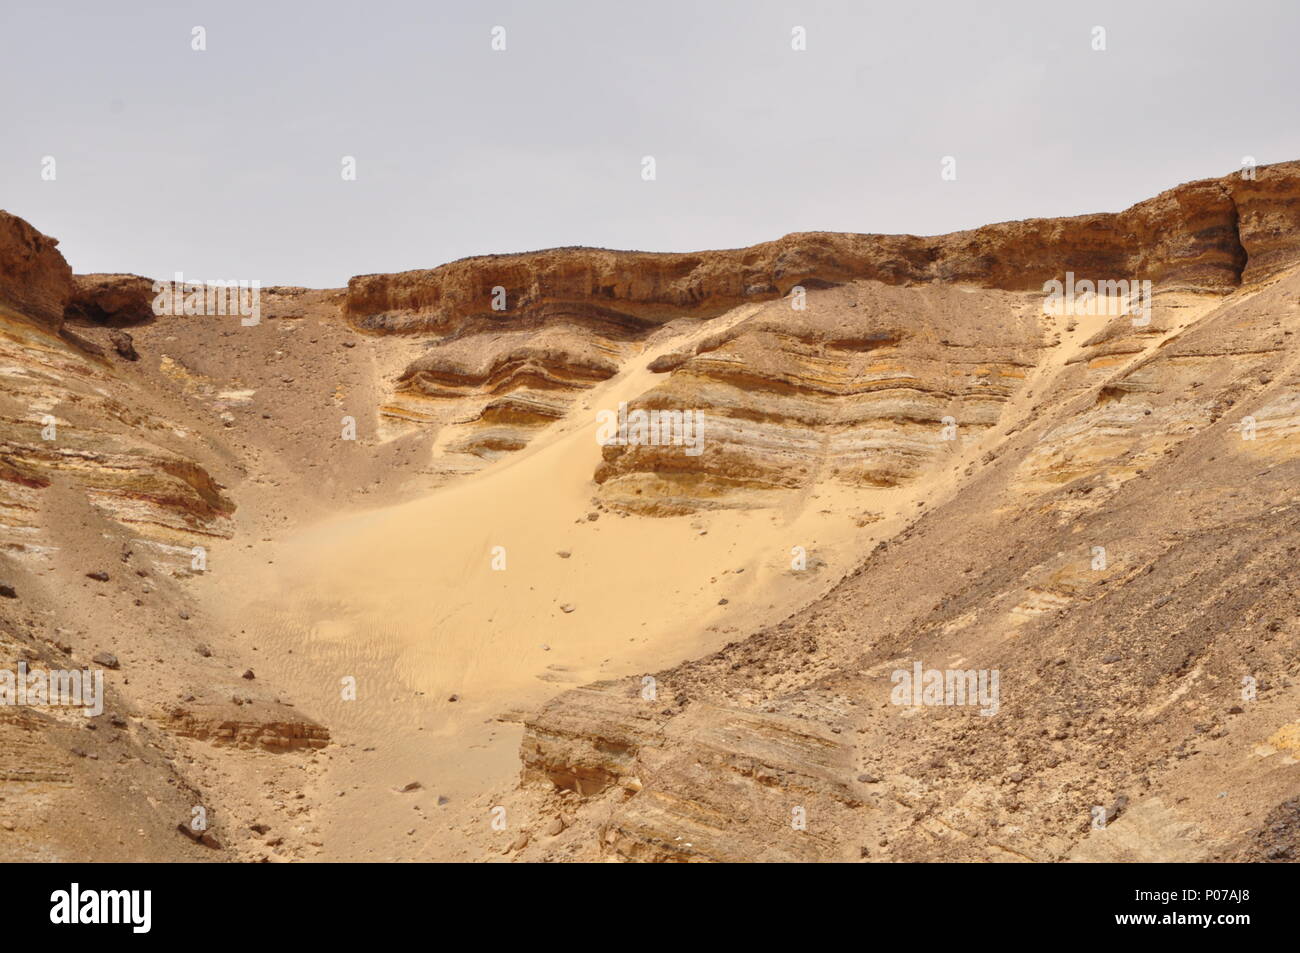 Roches stratifiées à l'entrée de la dépression des oasis bahariya, désert occidental, Égypte. Un super et magnifique endroit pour être pendant le printemps. Banque D'Images